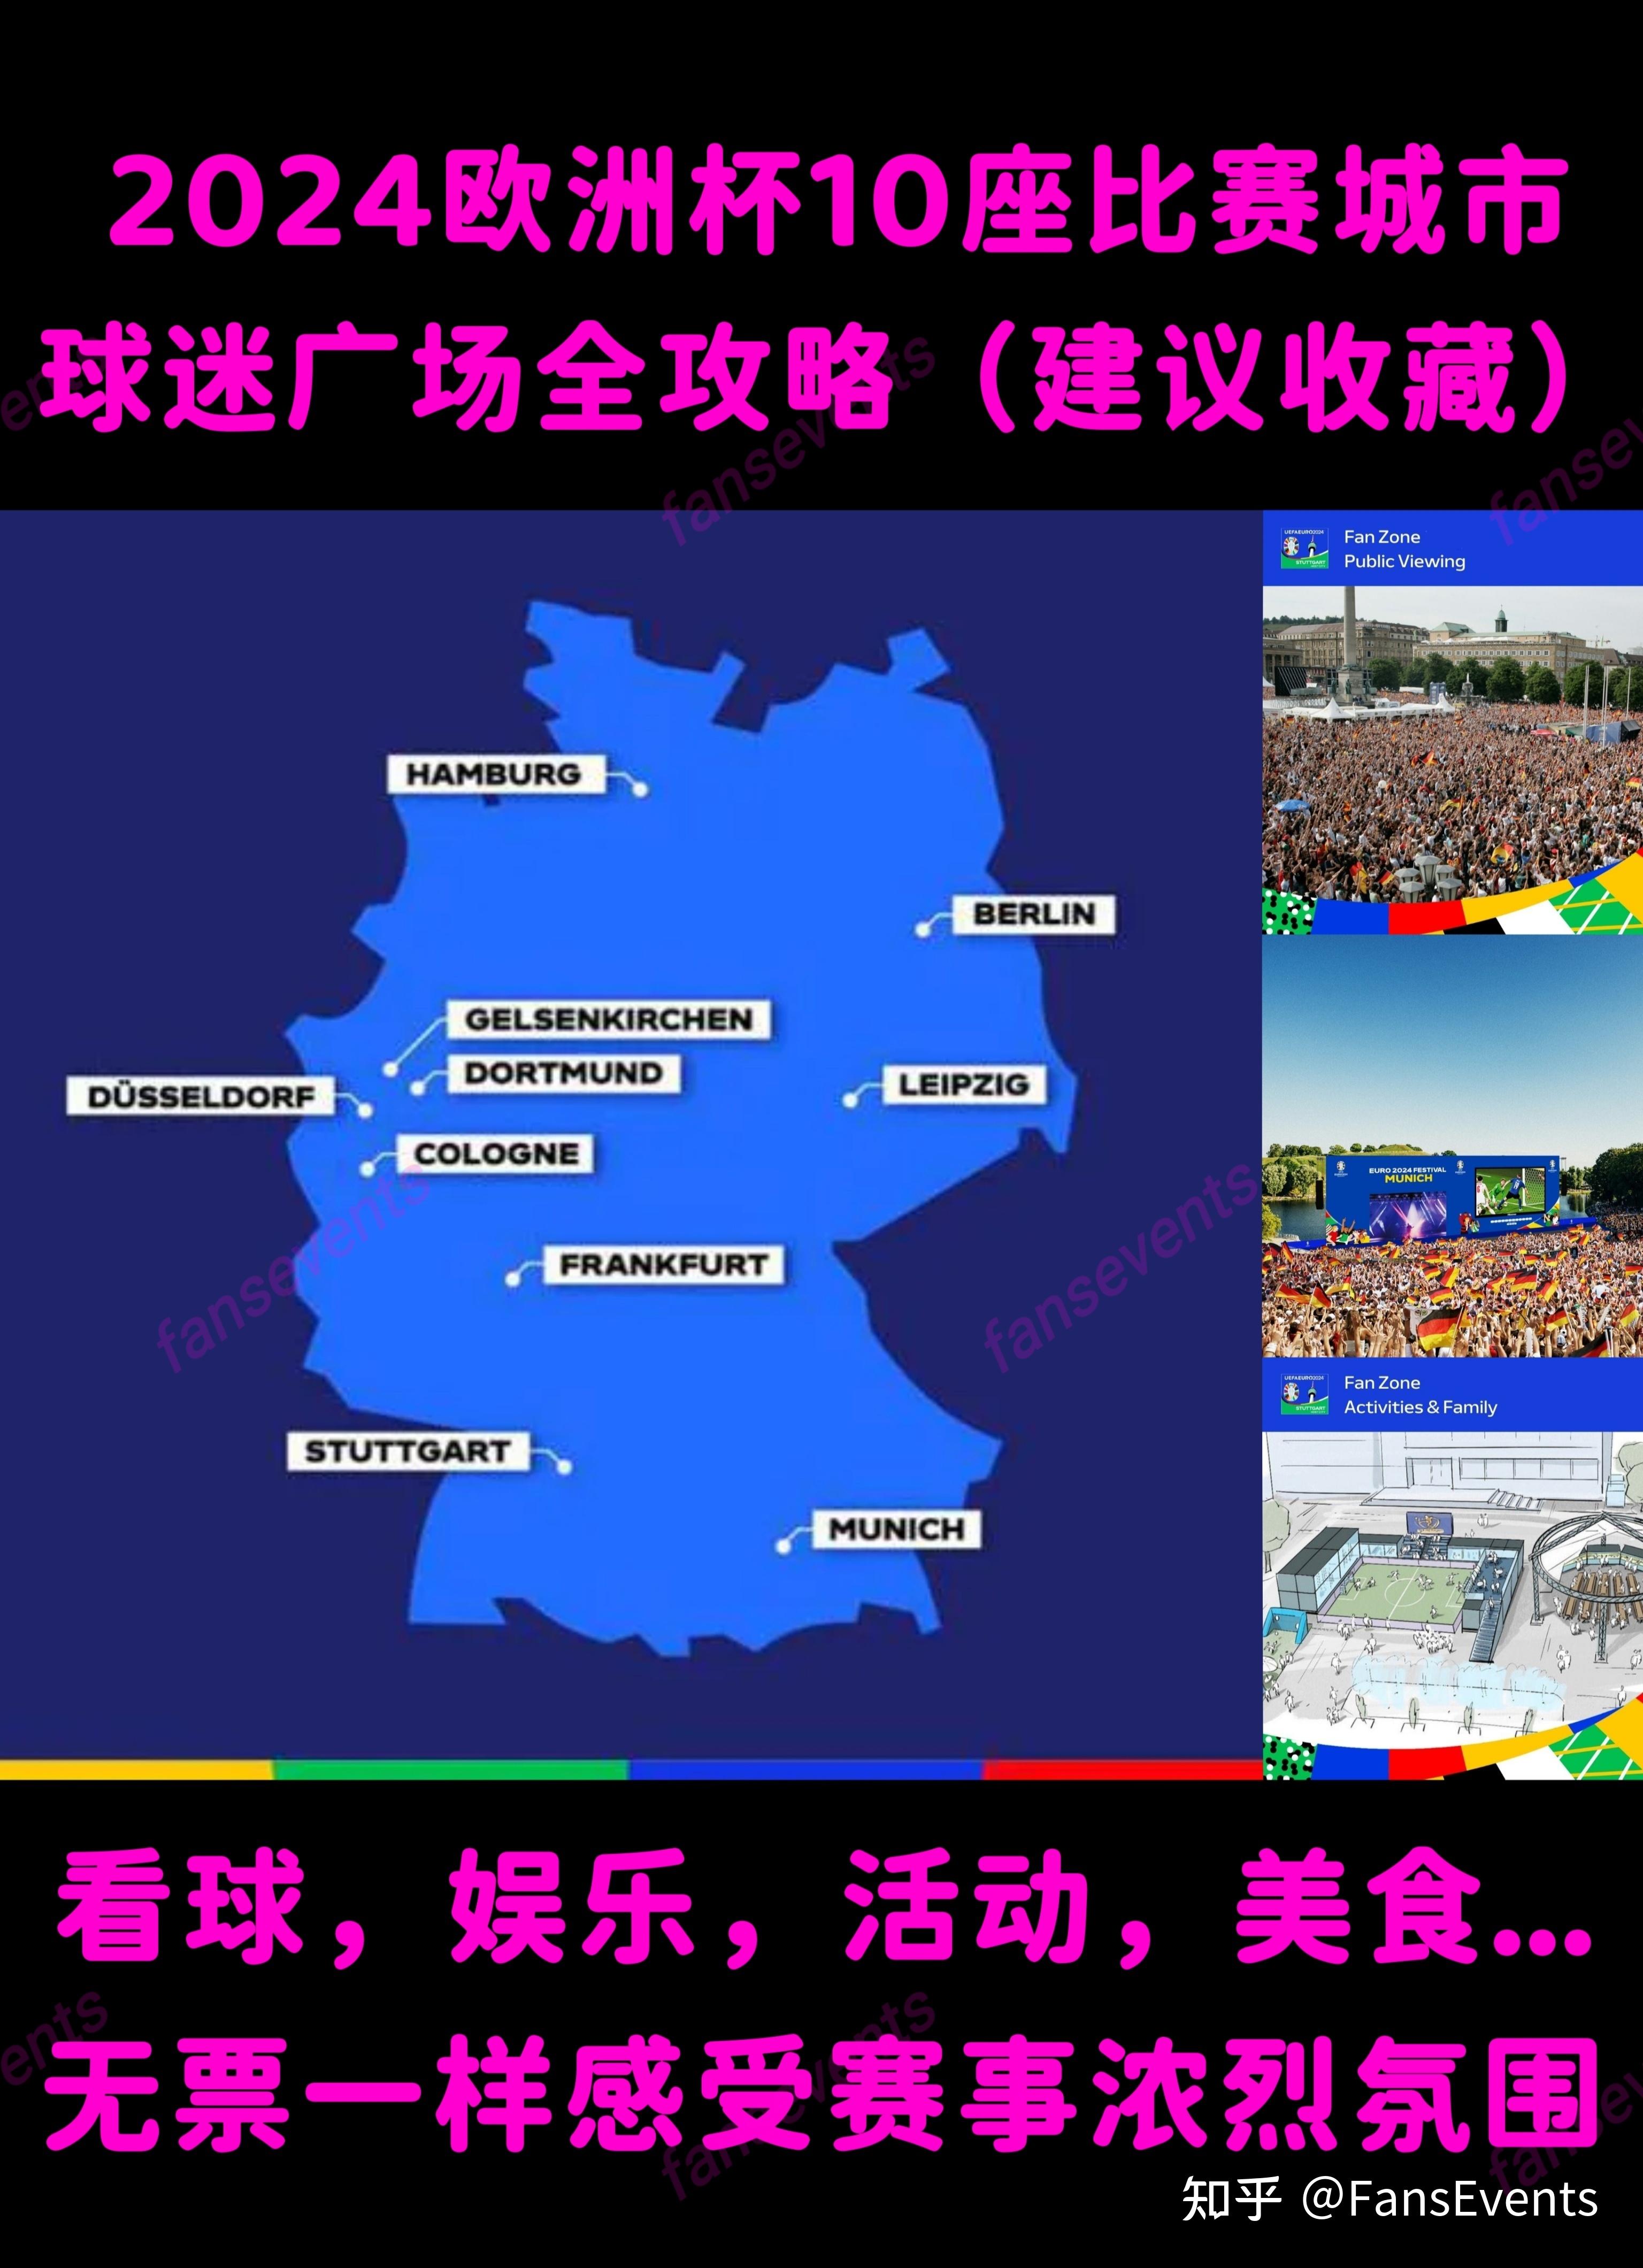 所有十座城市的球迷广告于开幕式当天开放至决赛结束（6.14-7.14）